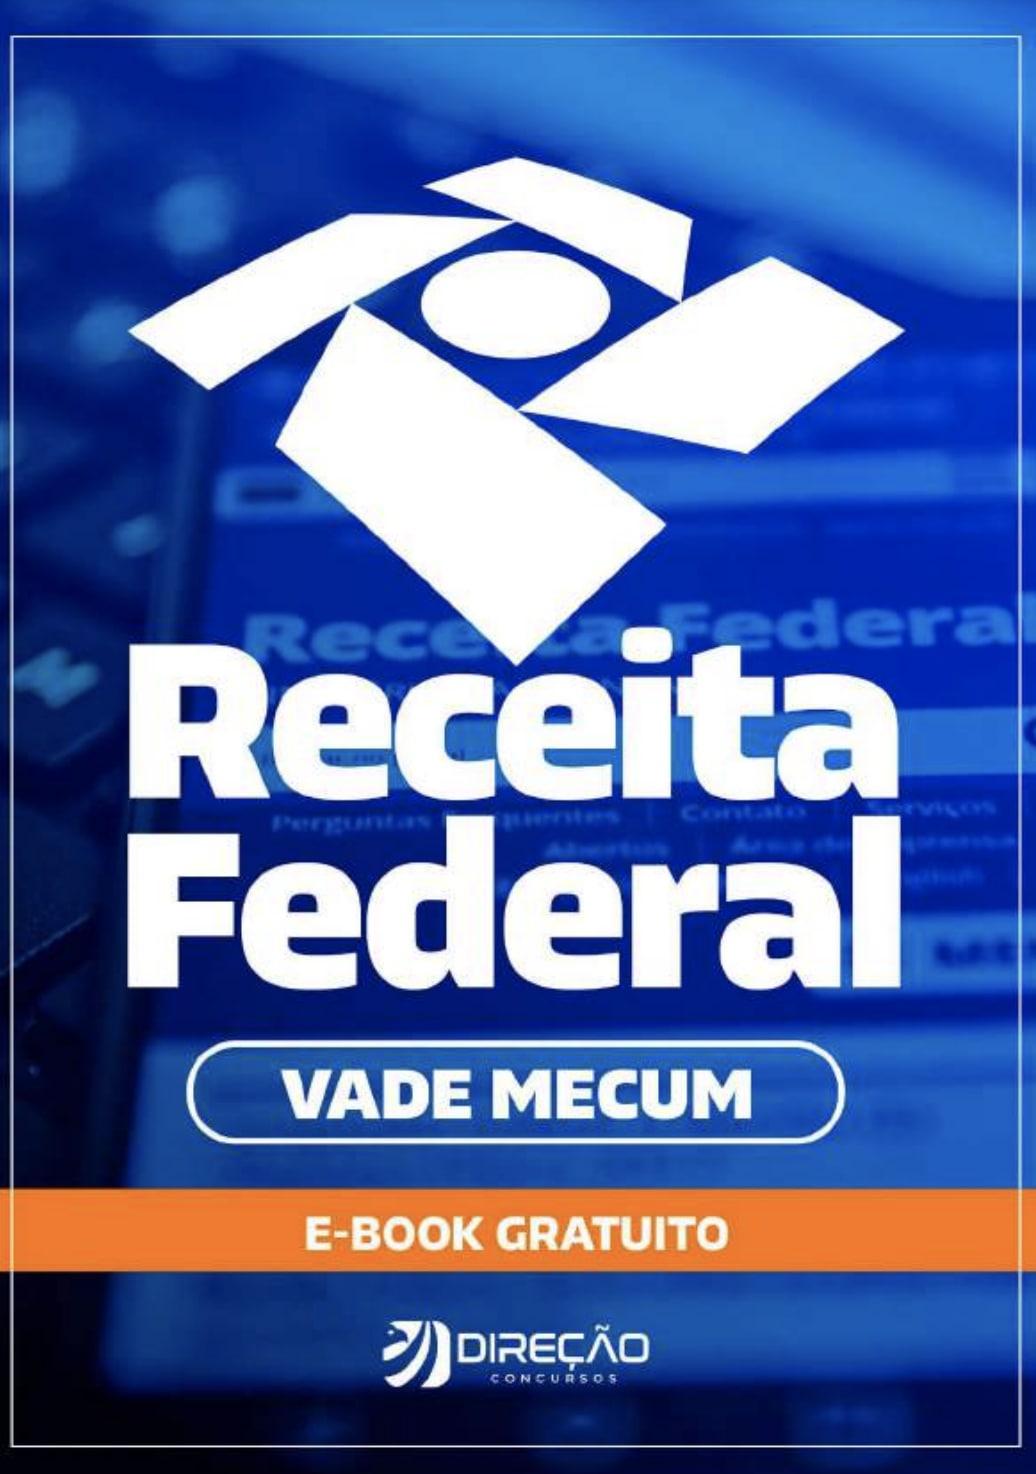 https://www.direcaoconcursos.com.br/inscricao-vade-mecum-rfb